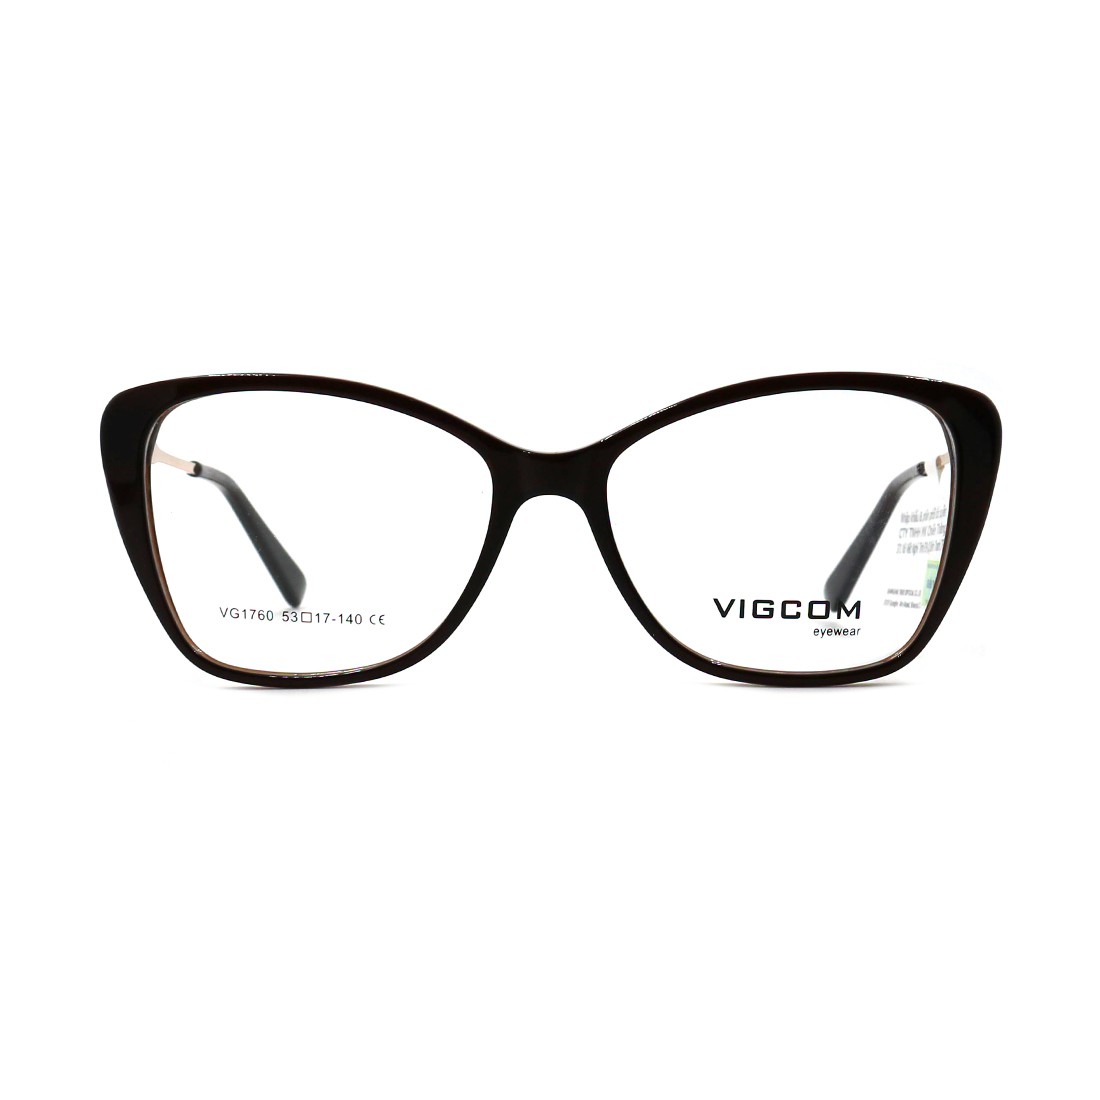 Gọng kính chính hãng Vigcom VG1760